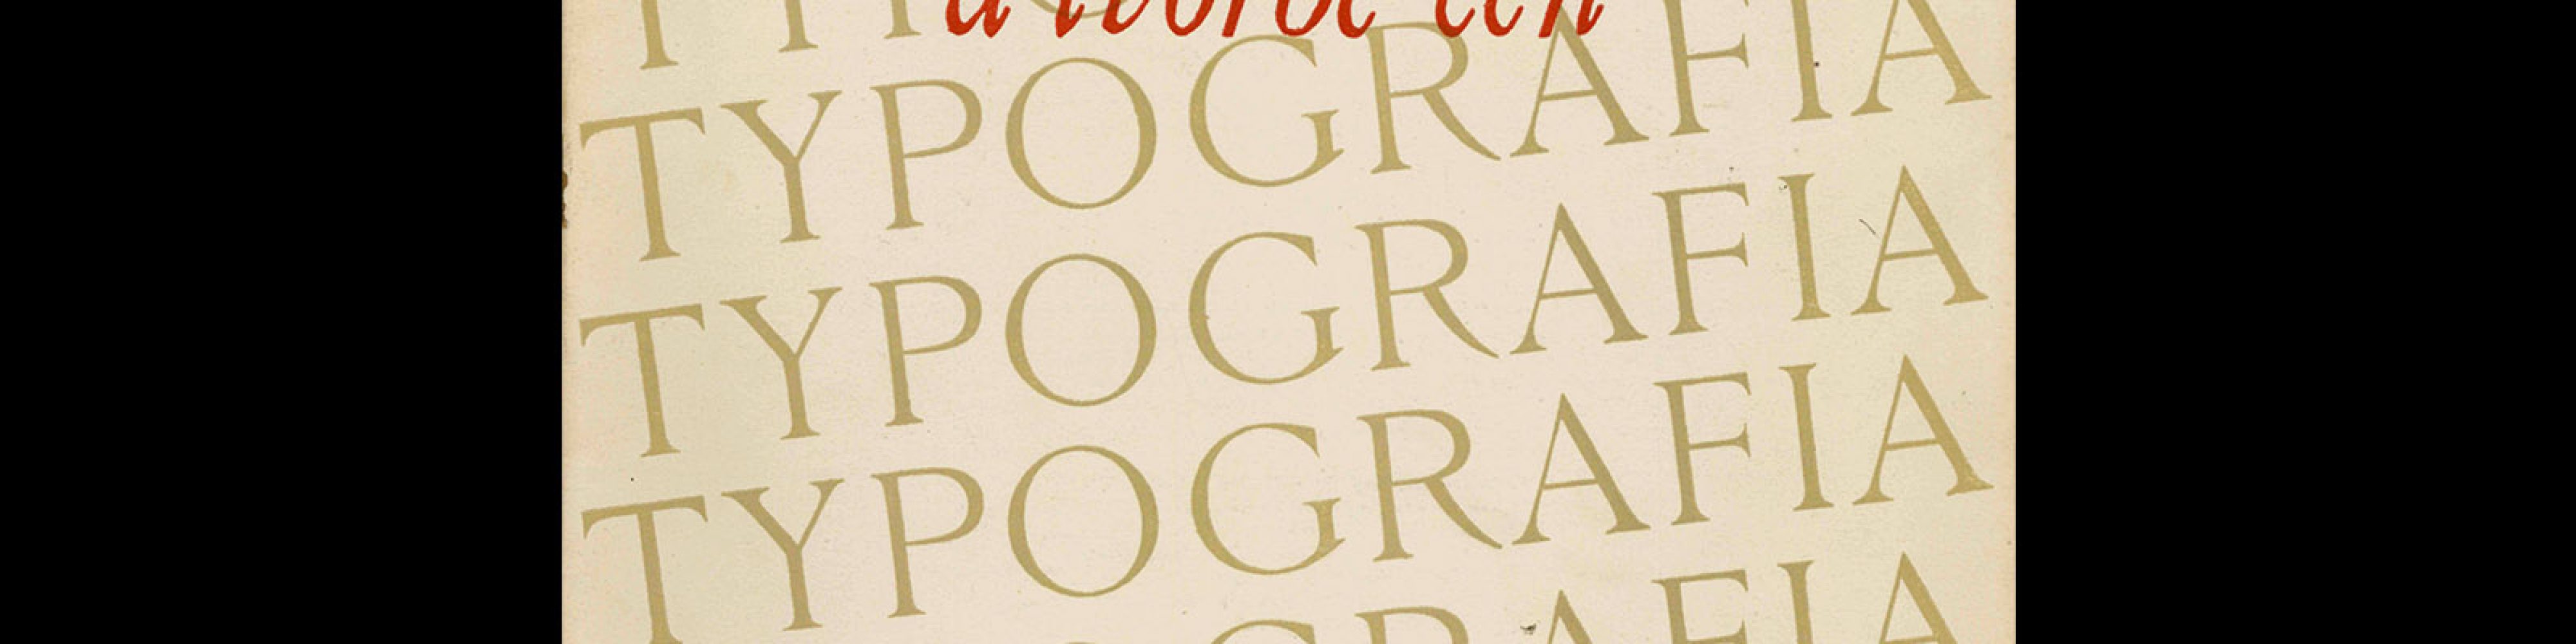 Typografia, ročník 56, 10, 1953. Cover design by Josef Hanzl